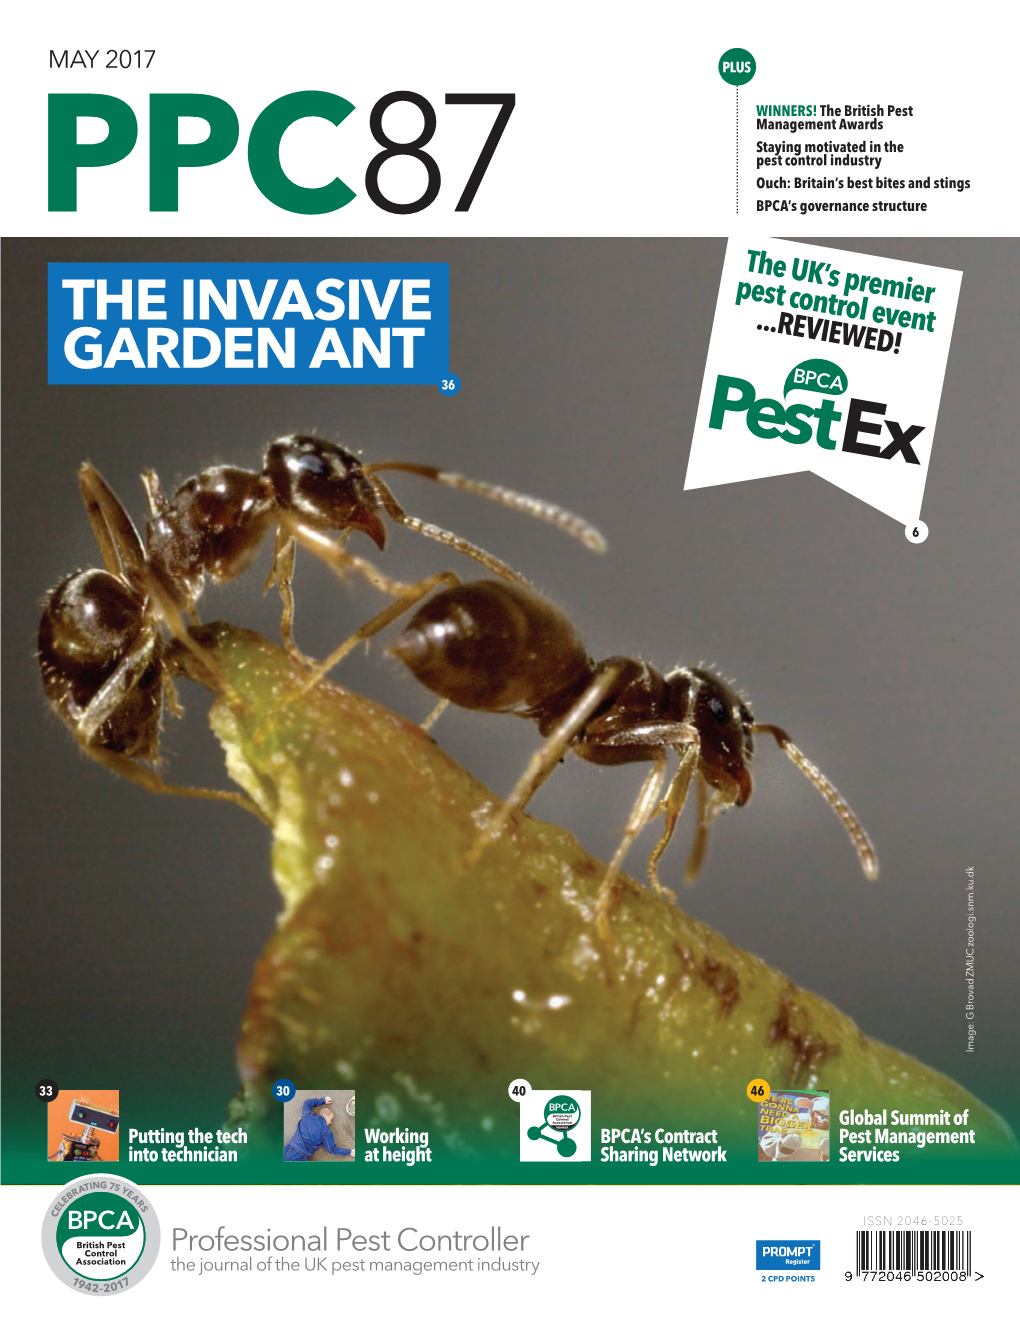 The Invasive Garden Ant 36